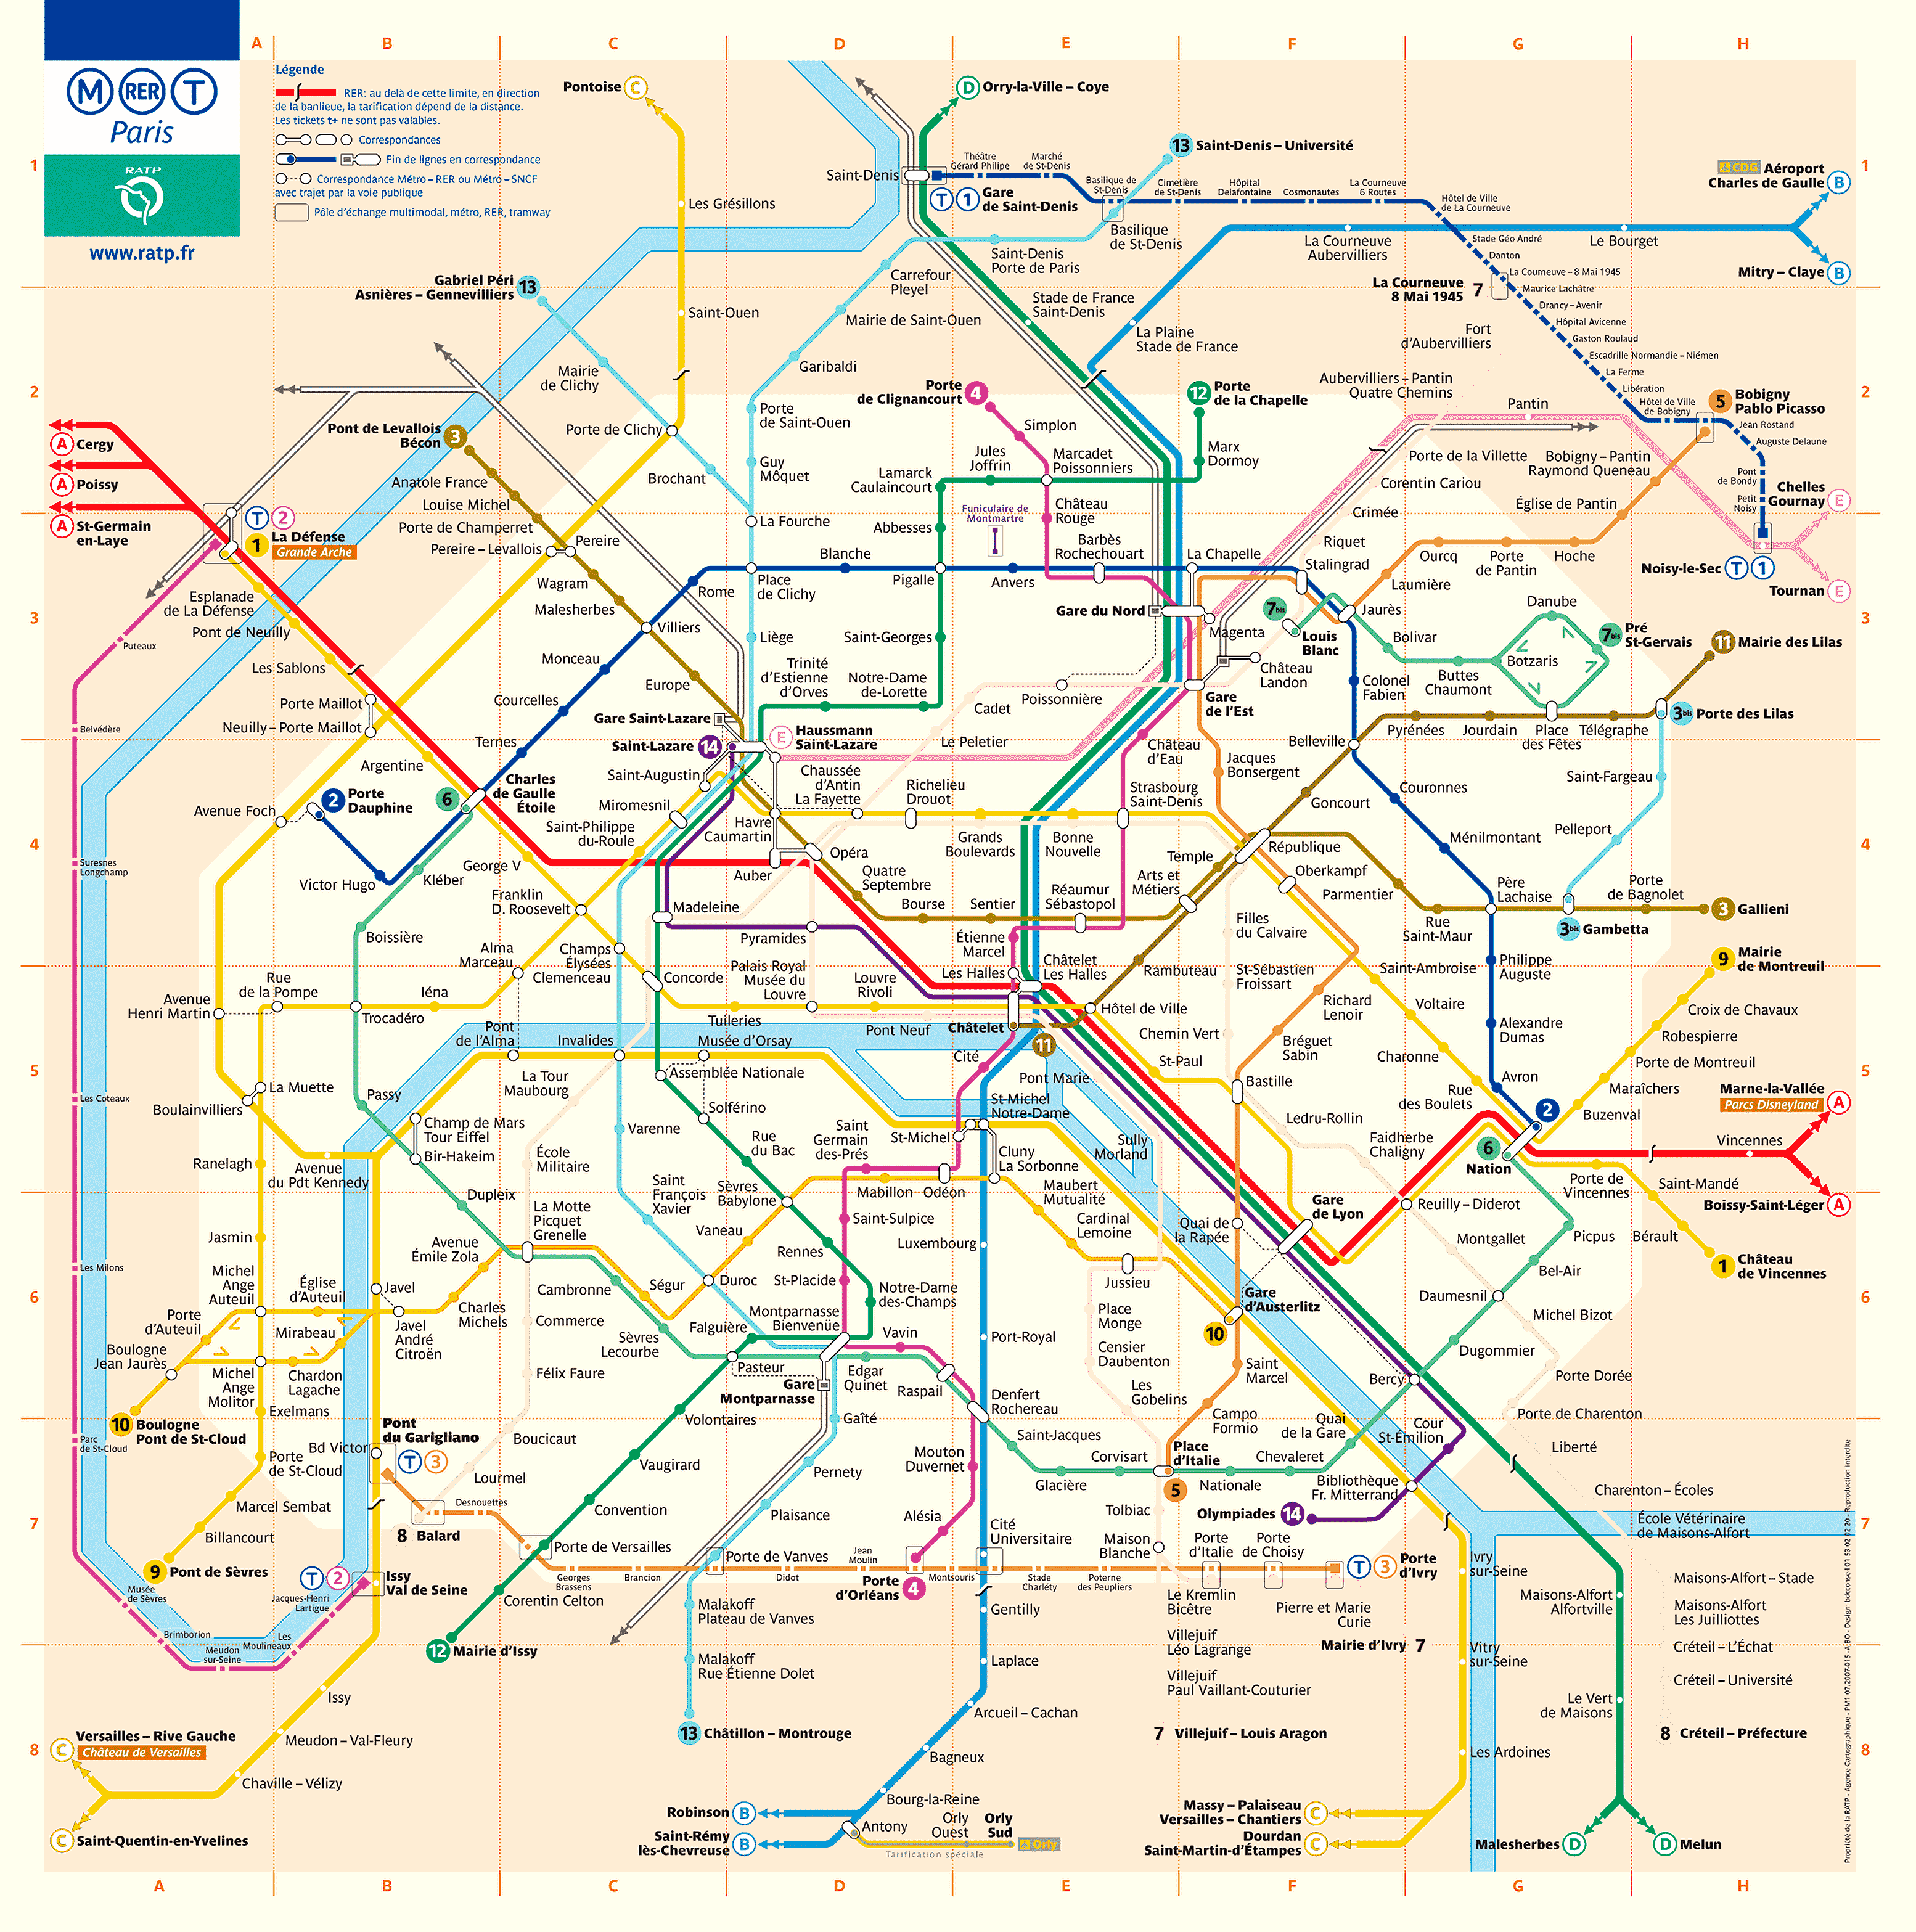 Central Paris Metro Map Paris Metro Map Metro Map Paris Metro | Images ...